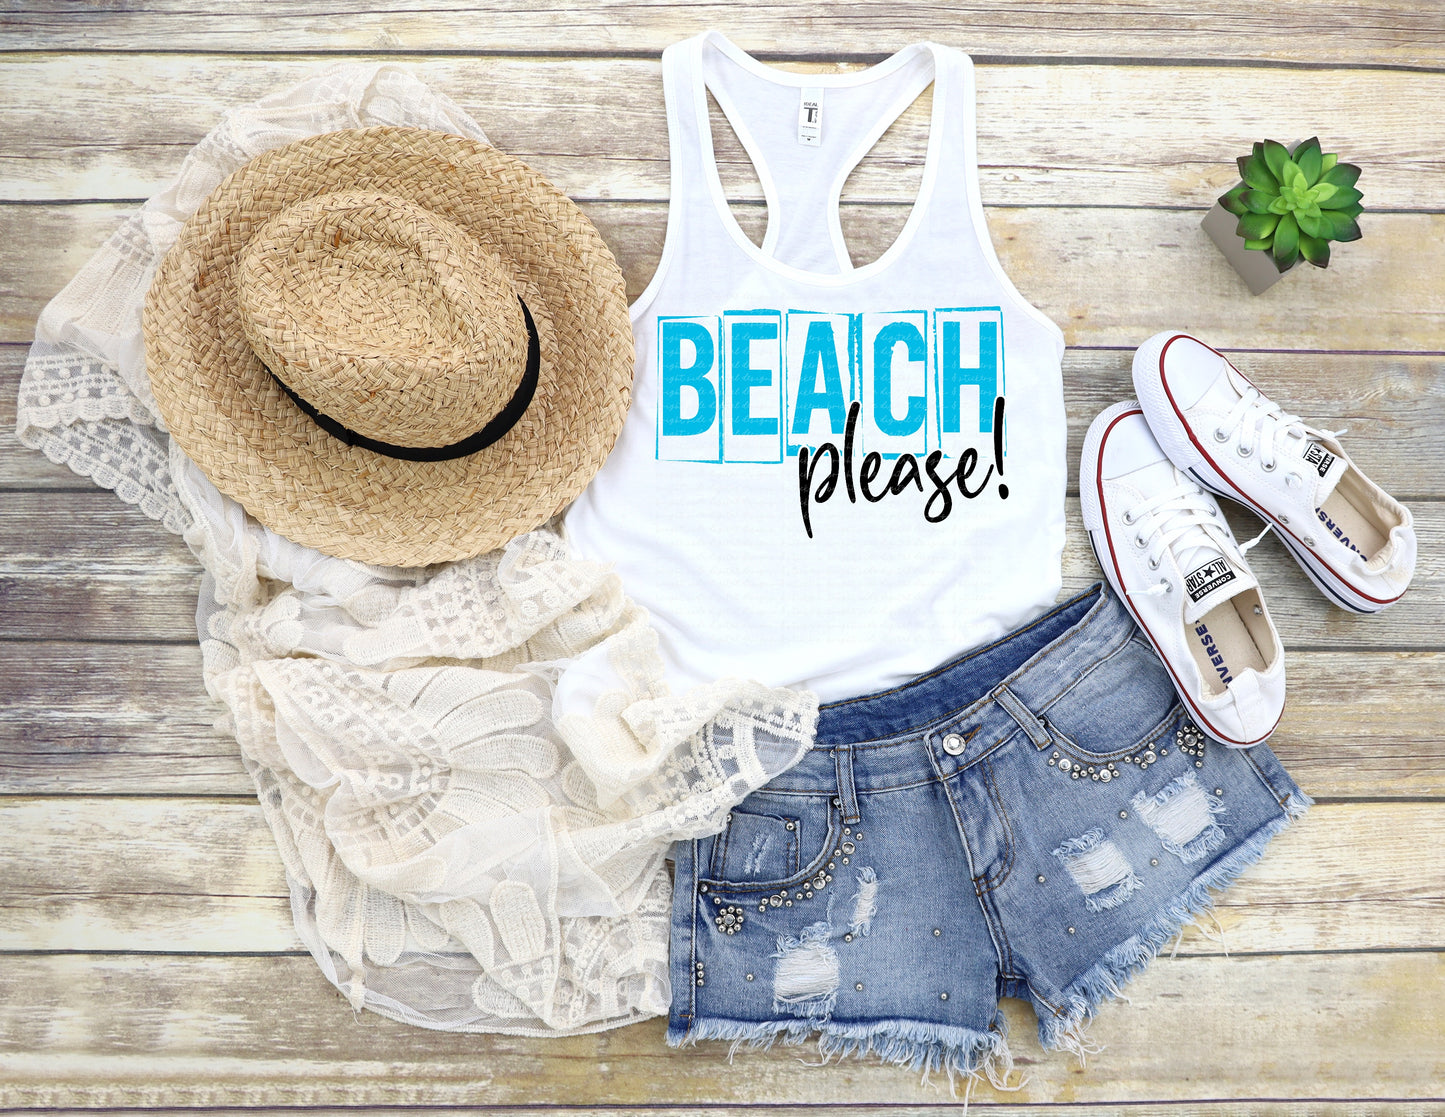 Beach please!